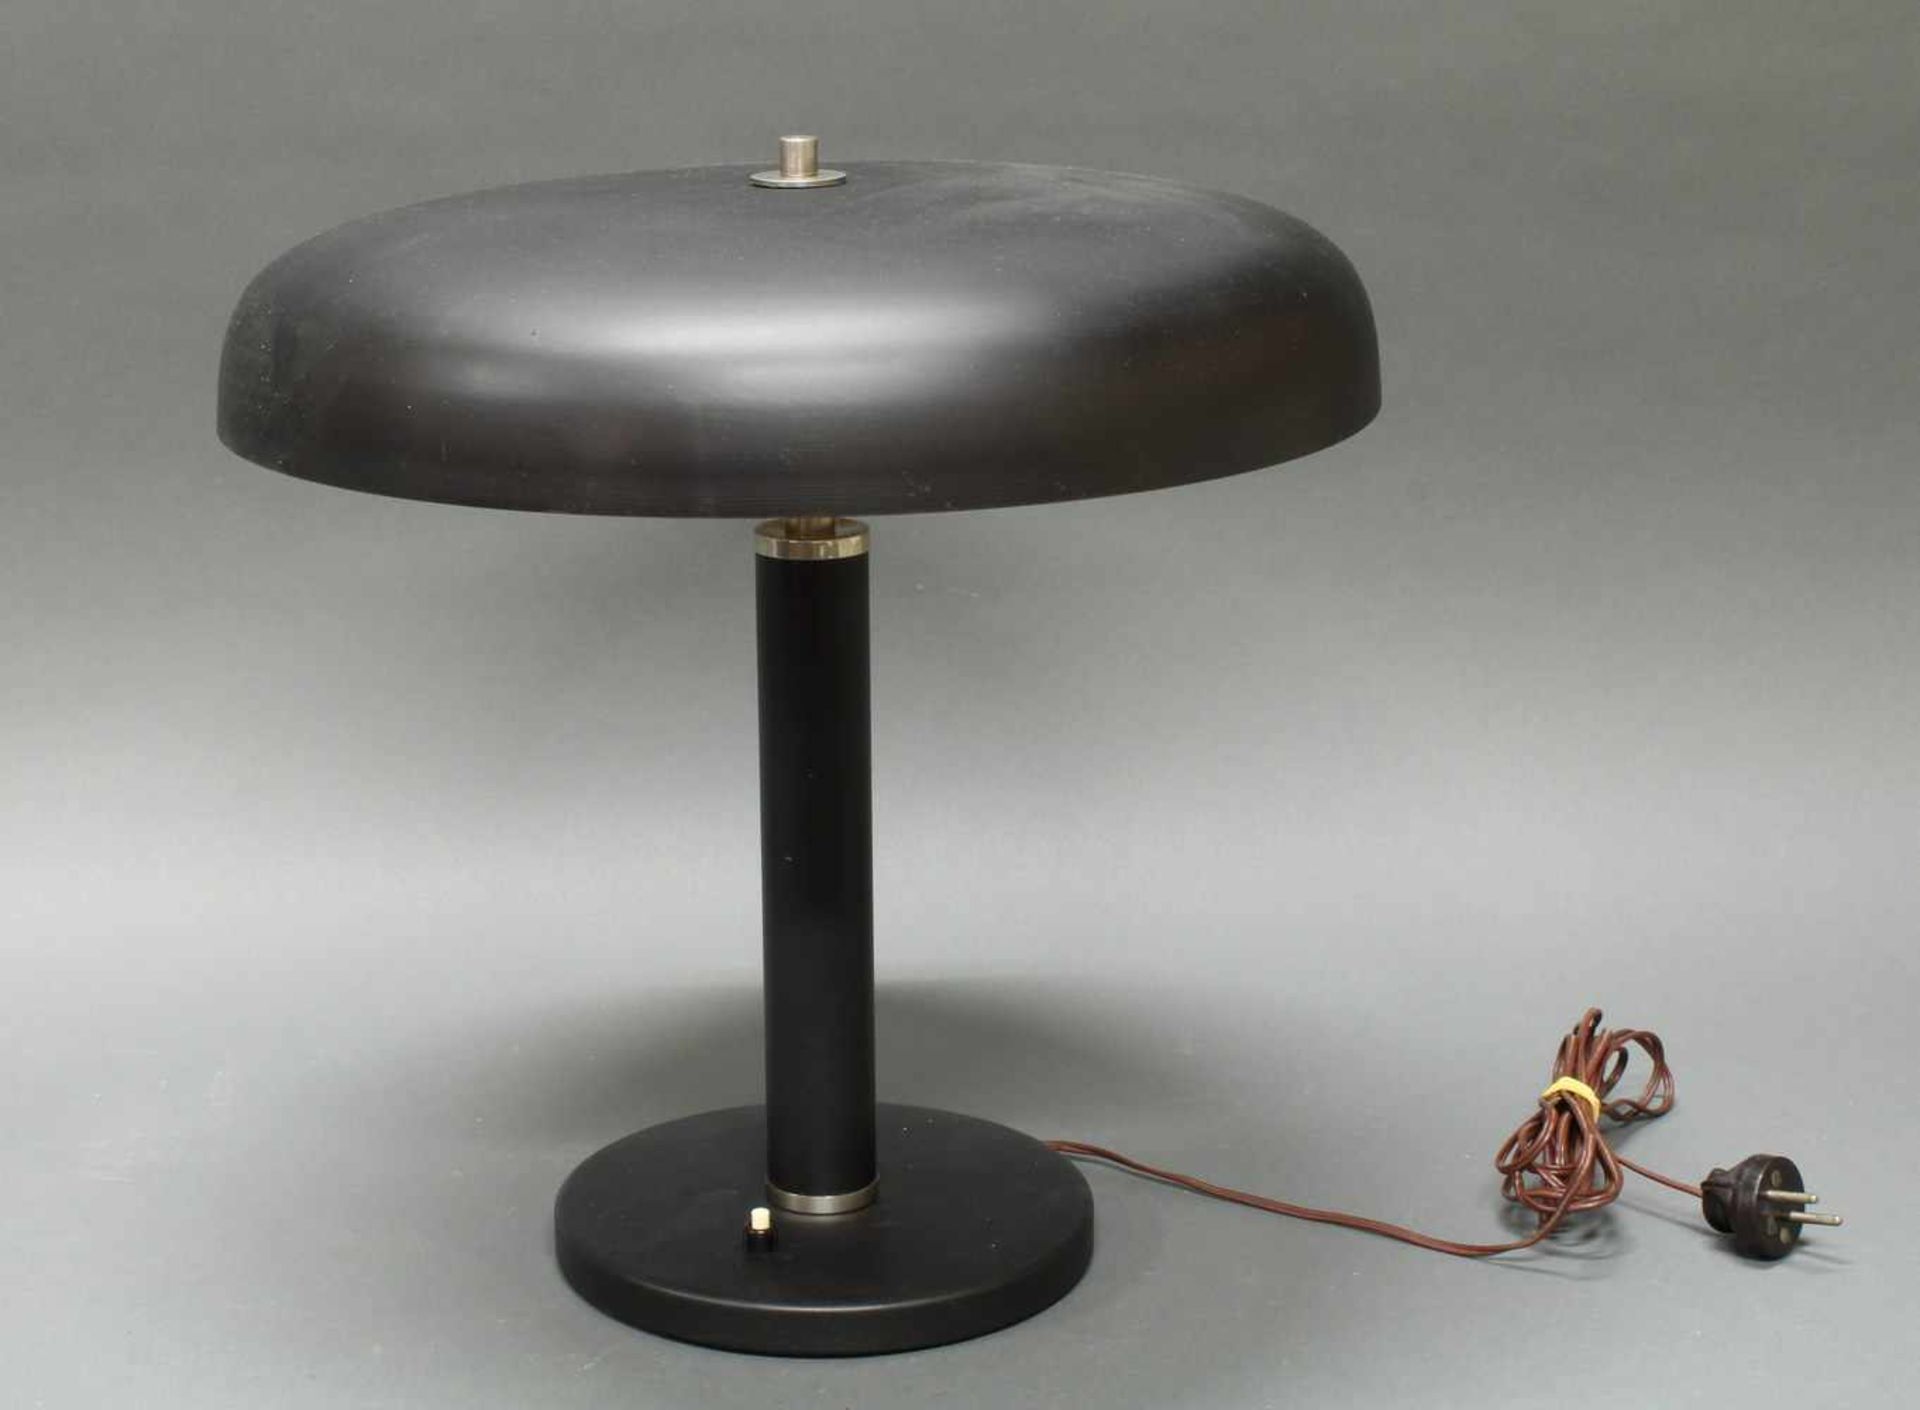 Tischlampe, Art Deco, um 1920/30, Schirm und Fuß Metall schwarz mattiert, Chromabsatz, einflammig, - Bild 2 aus 2